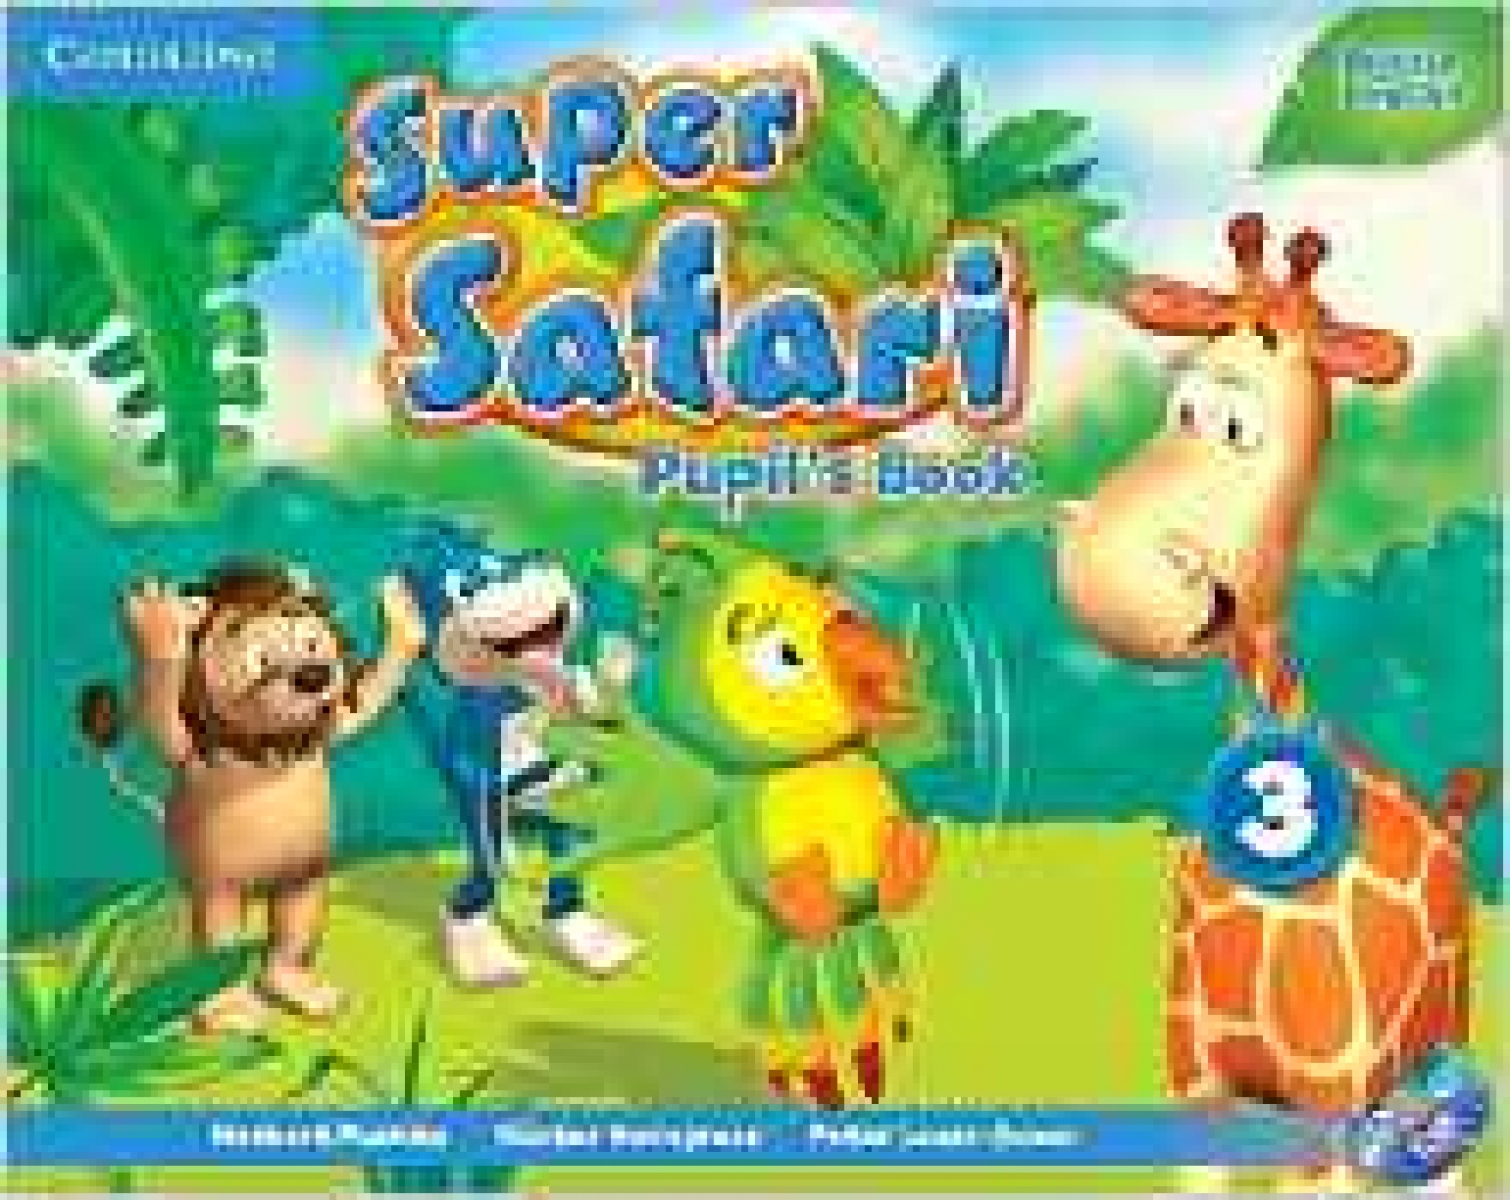 Super Safari 3